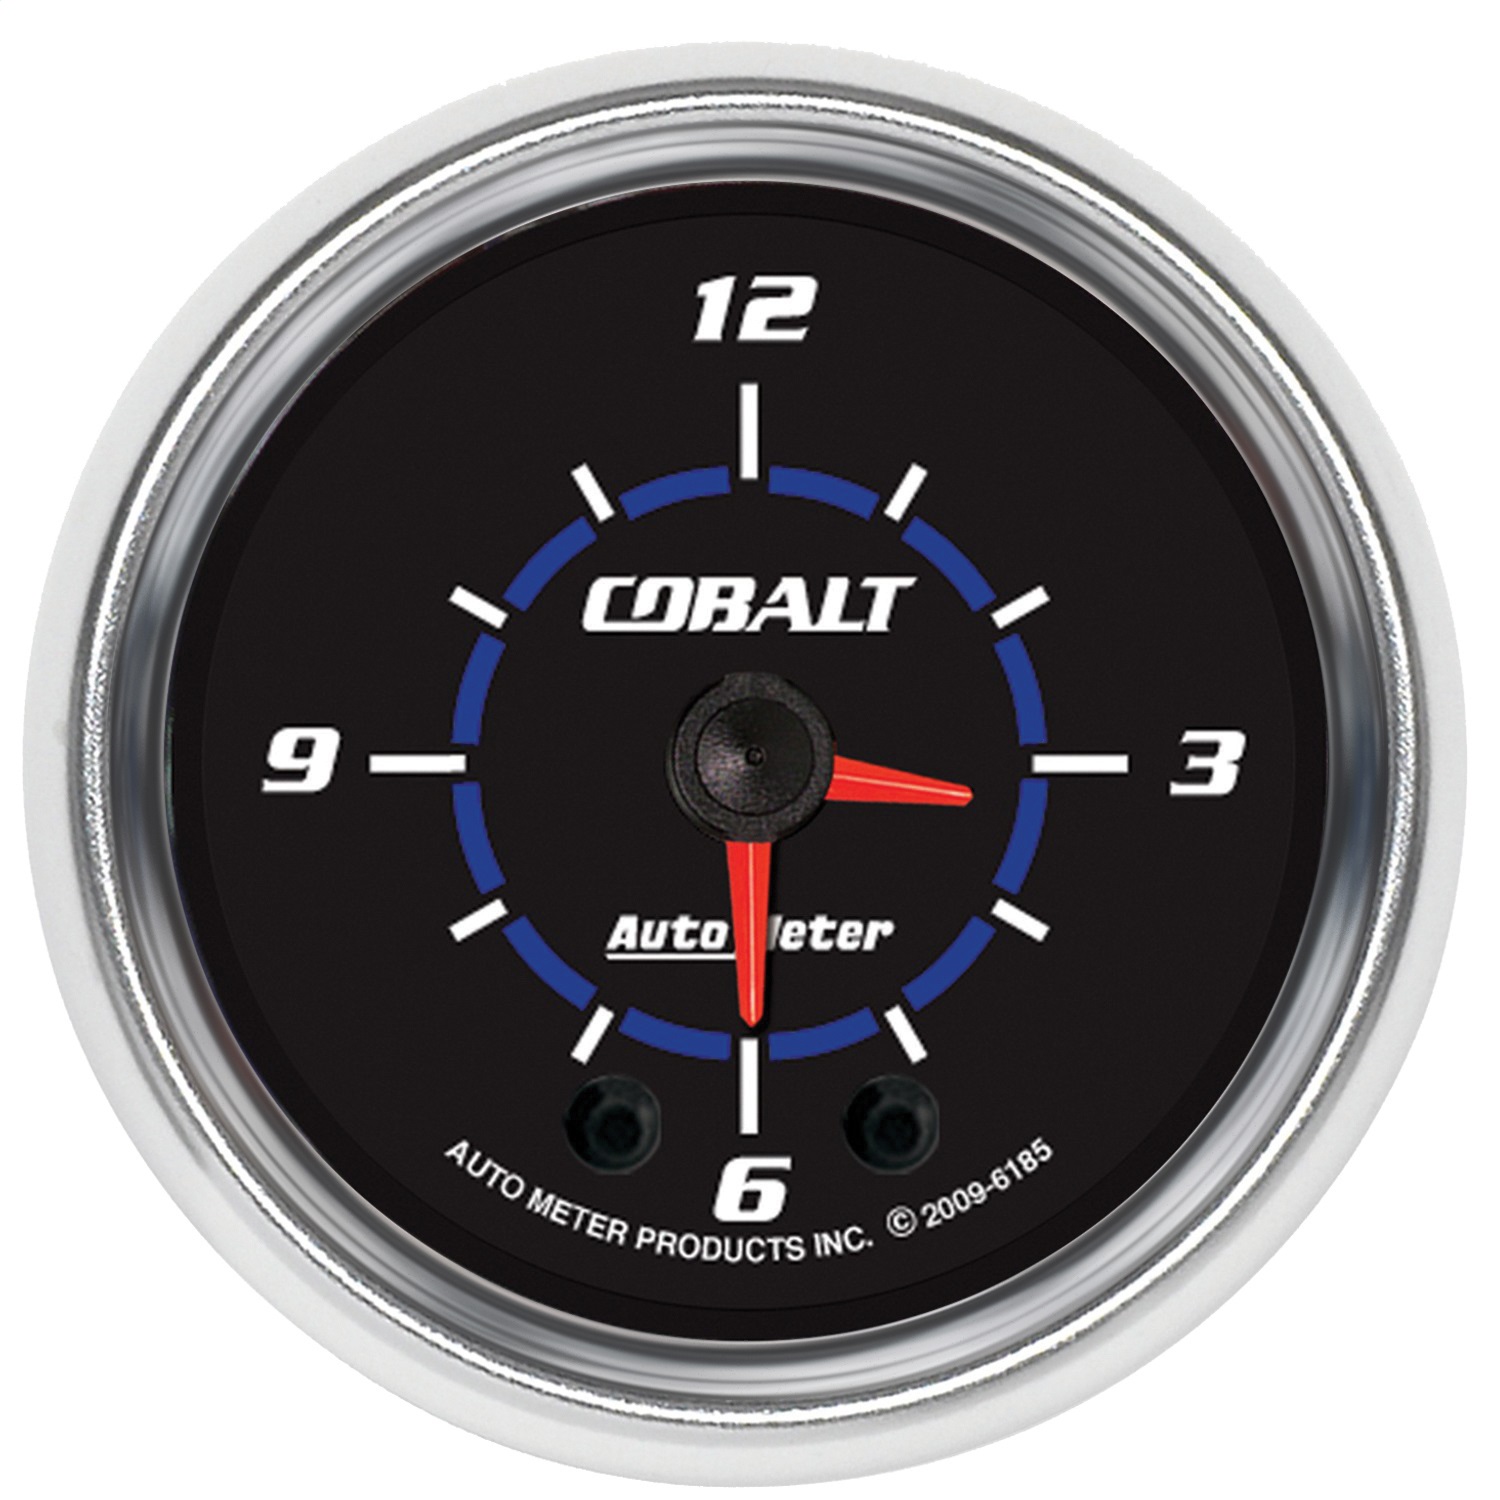 Auto Meter Auto Meter 6185 Cobalt; Clock